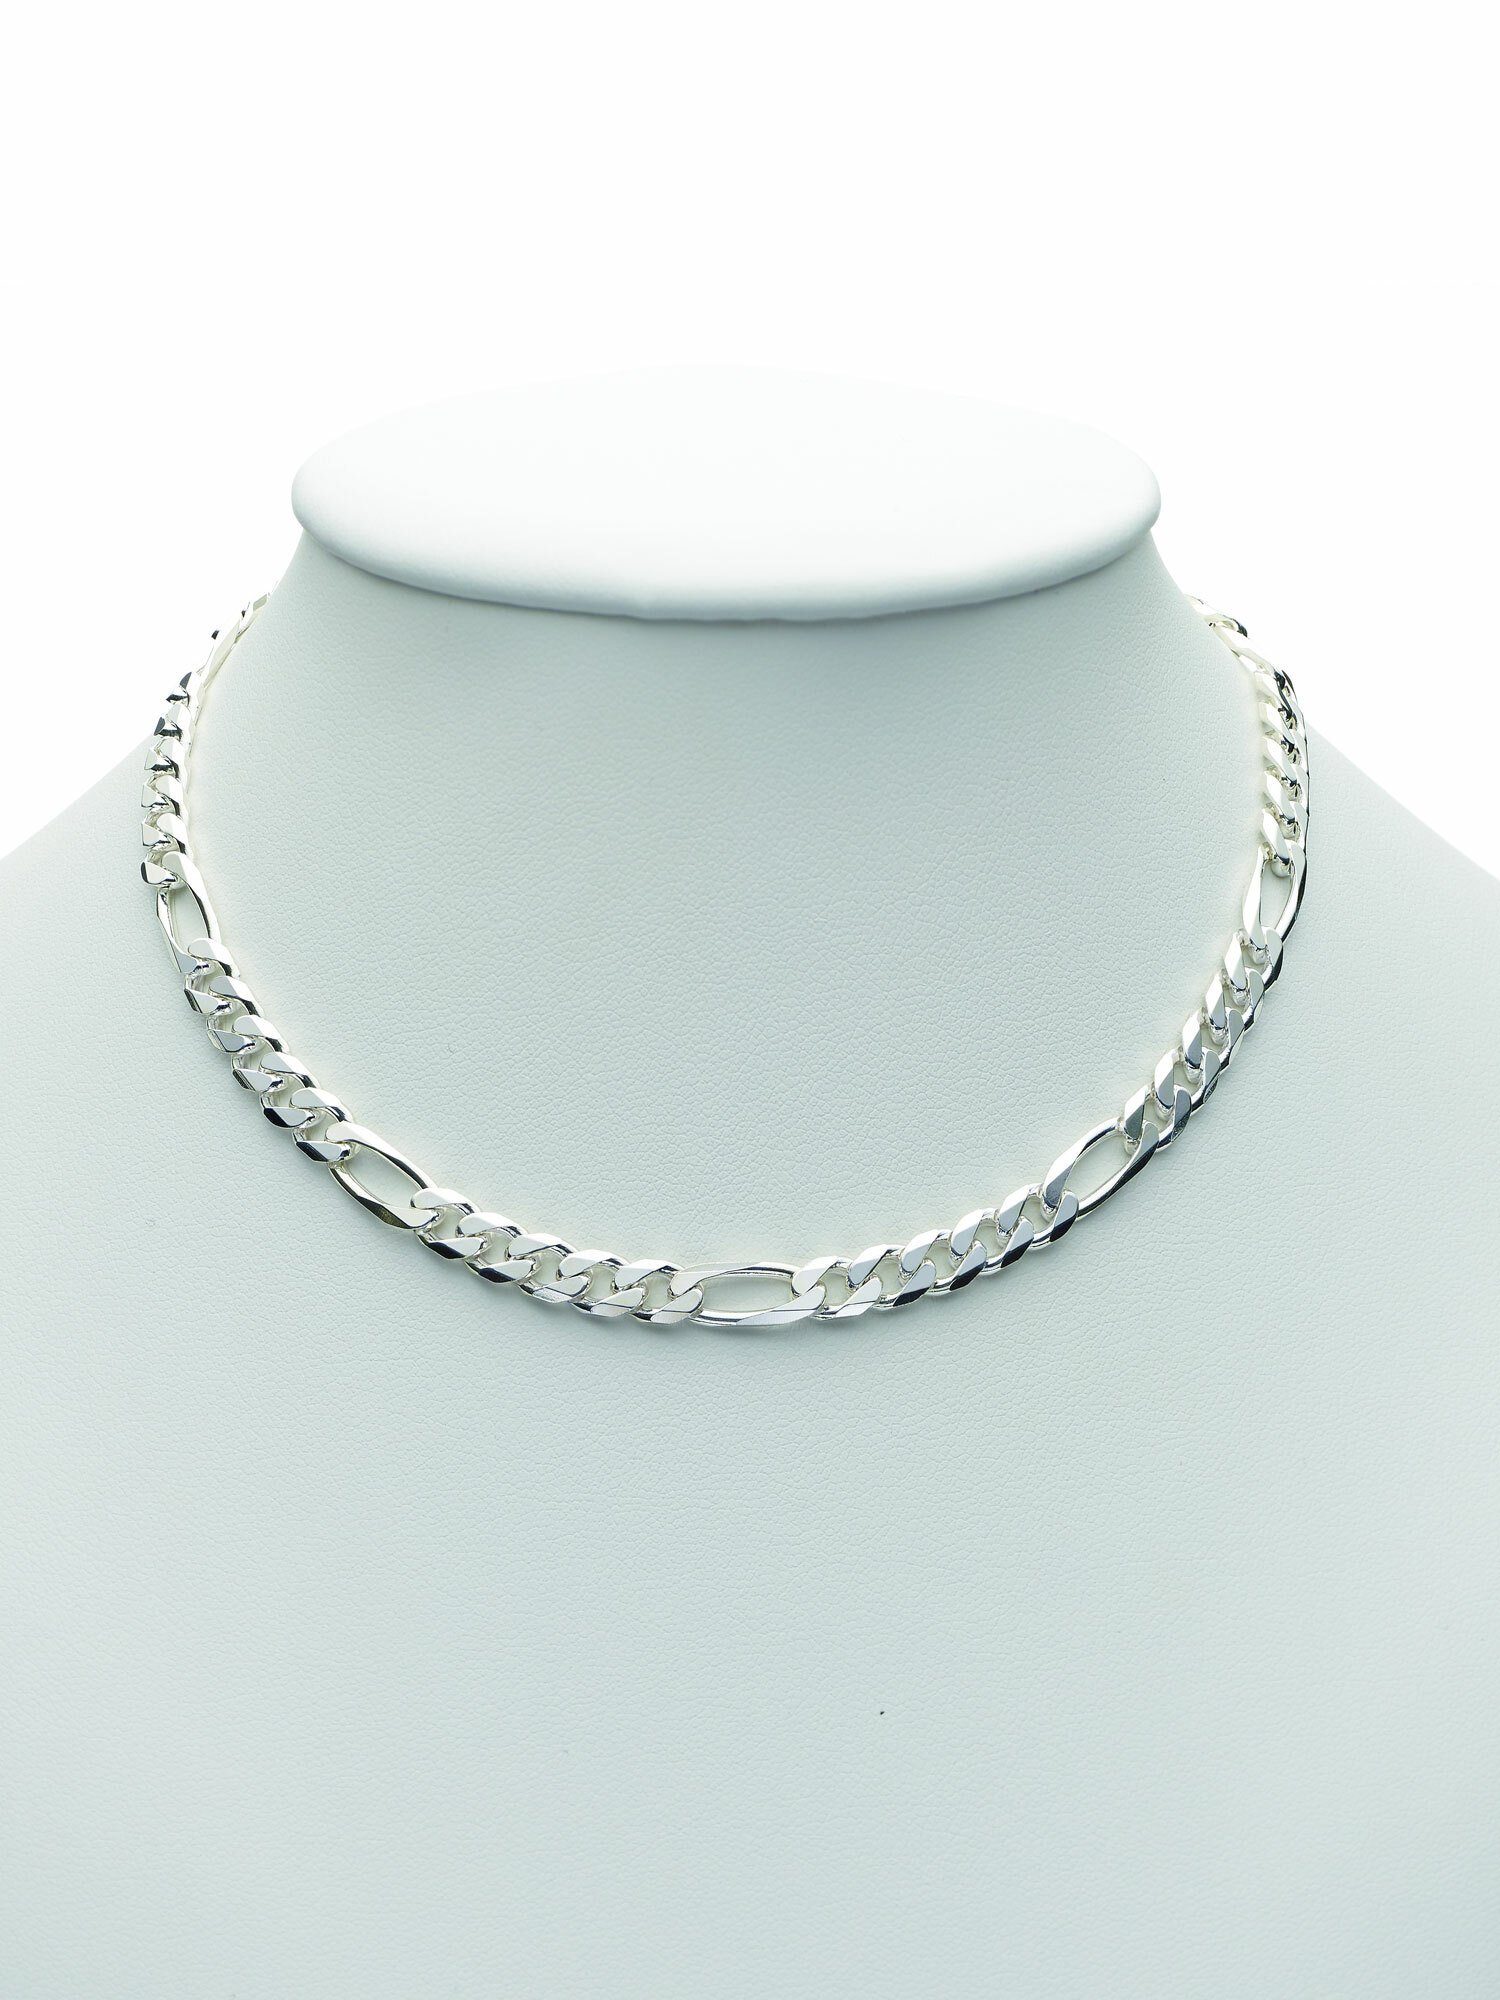 Damen Schmuck Adelia´s Silberkette 925 Silber Figaro Halskette 50 cm, 50 cm 925 Sterling Silber Figarokette Silberschmuck für Da